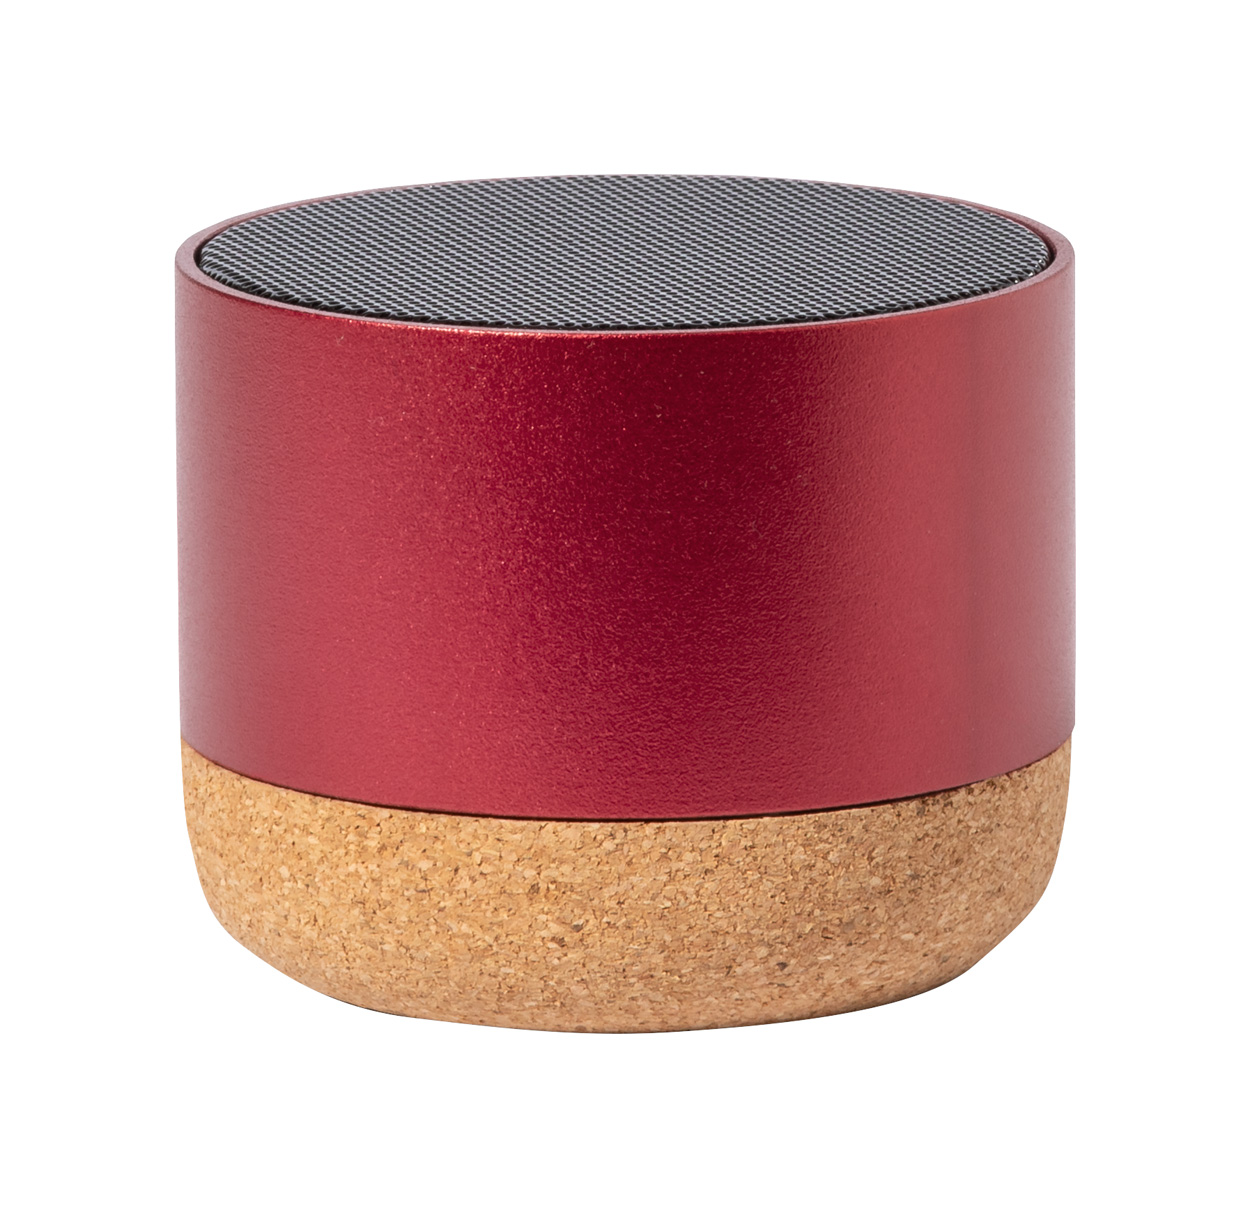 Moore bluetooth speaker - red